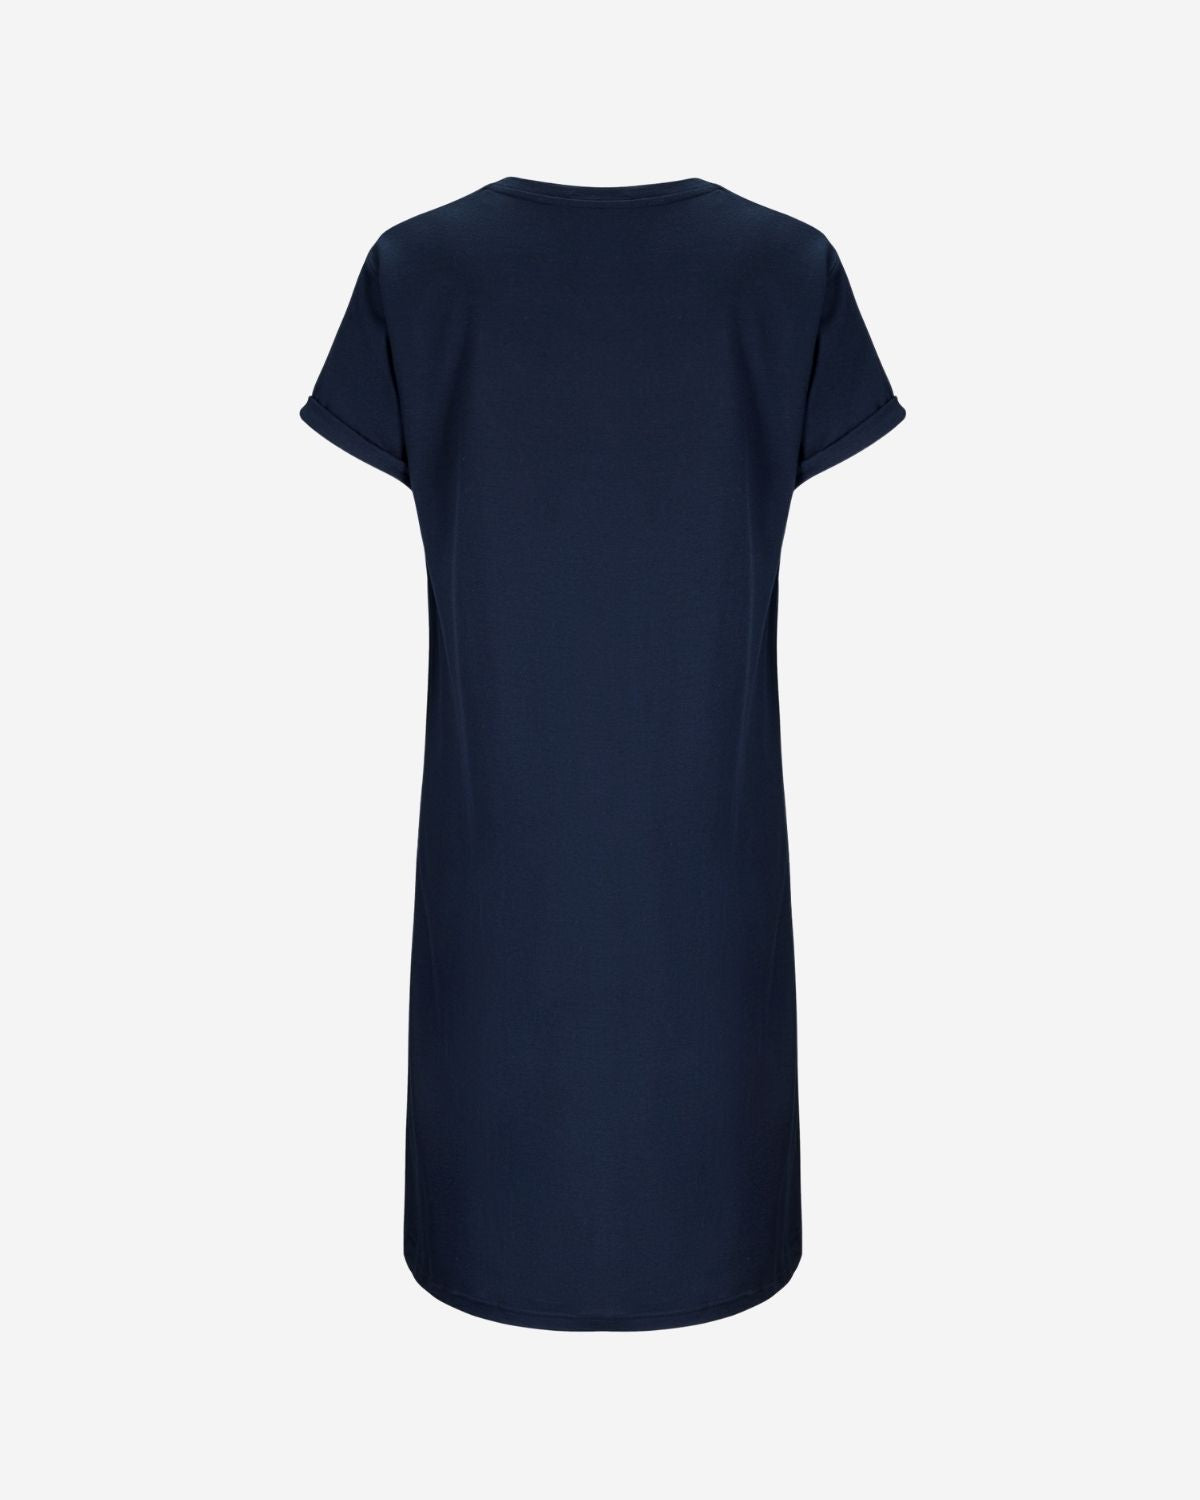 Skog T-shirt Dress Woman Navy